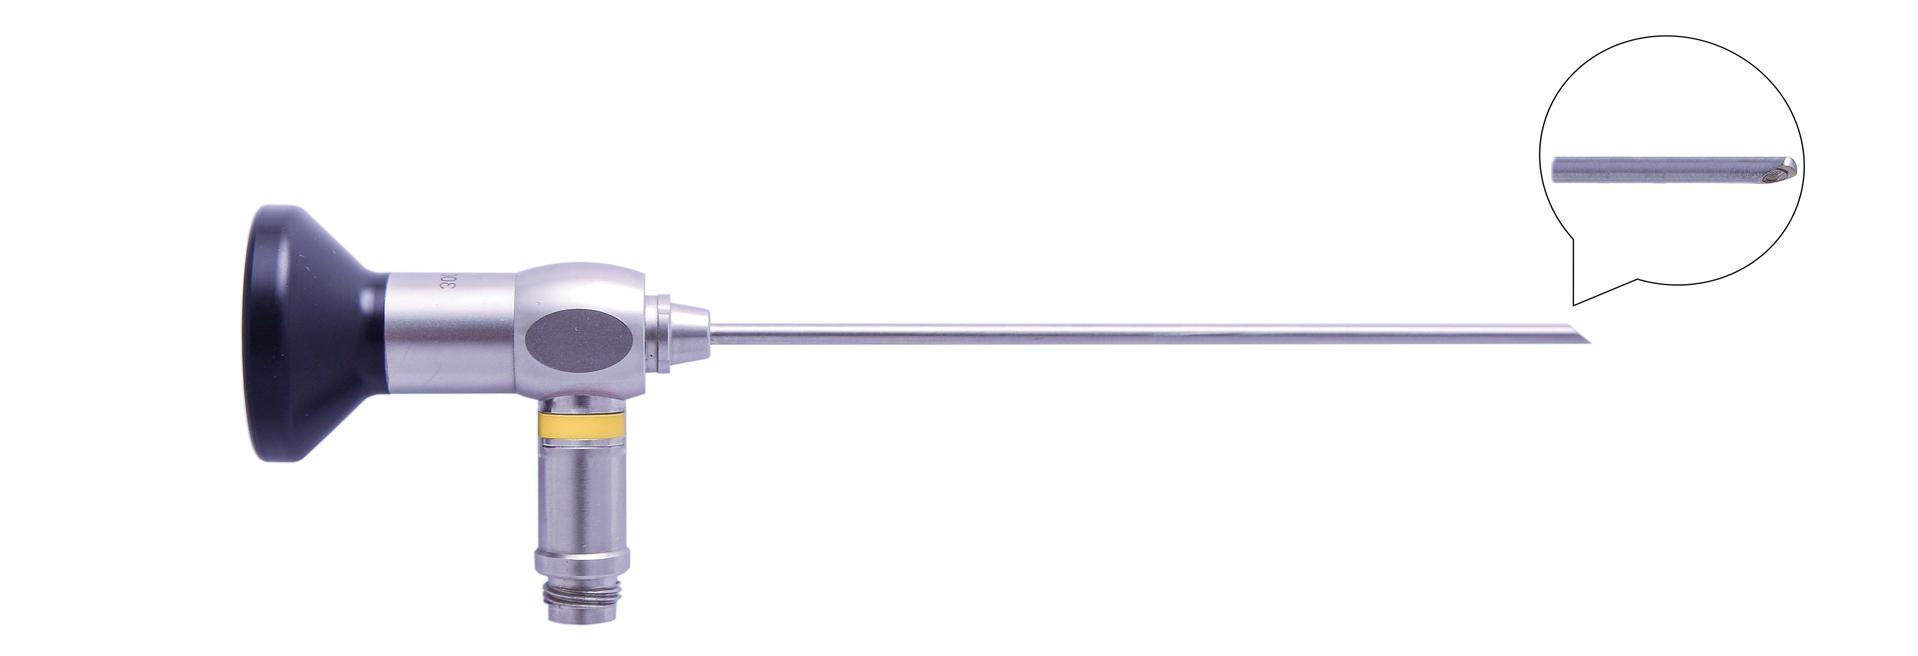 Трубка оптическая (артроскопическая, риноскопическая) ТОАР-007 диам. 2.7 мм, с углом наблюдения 70 гр. (дл. 110 мм)